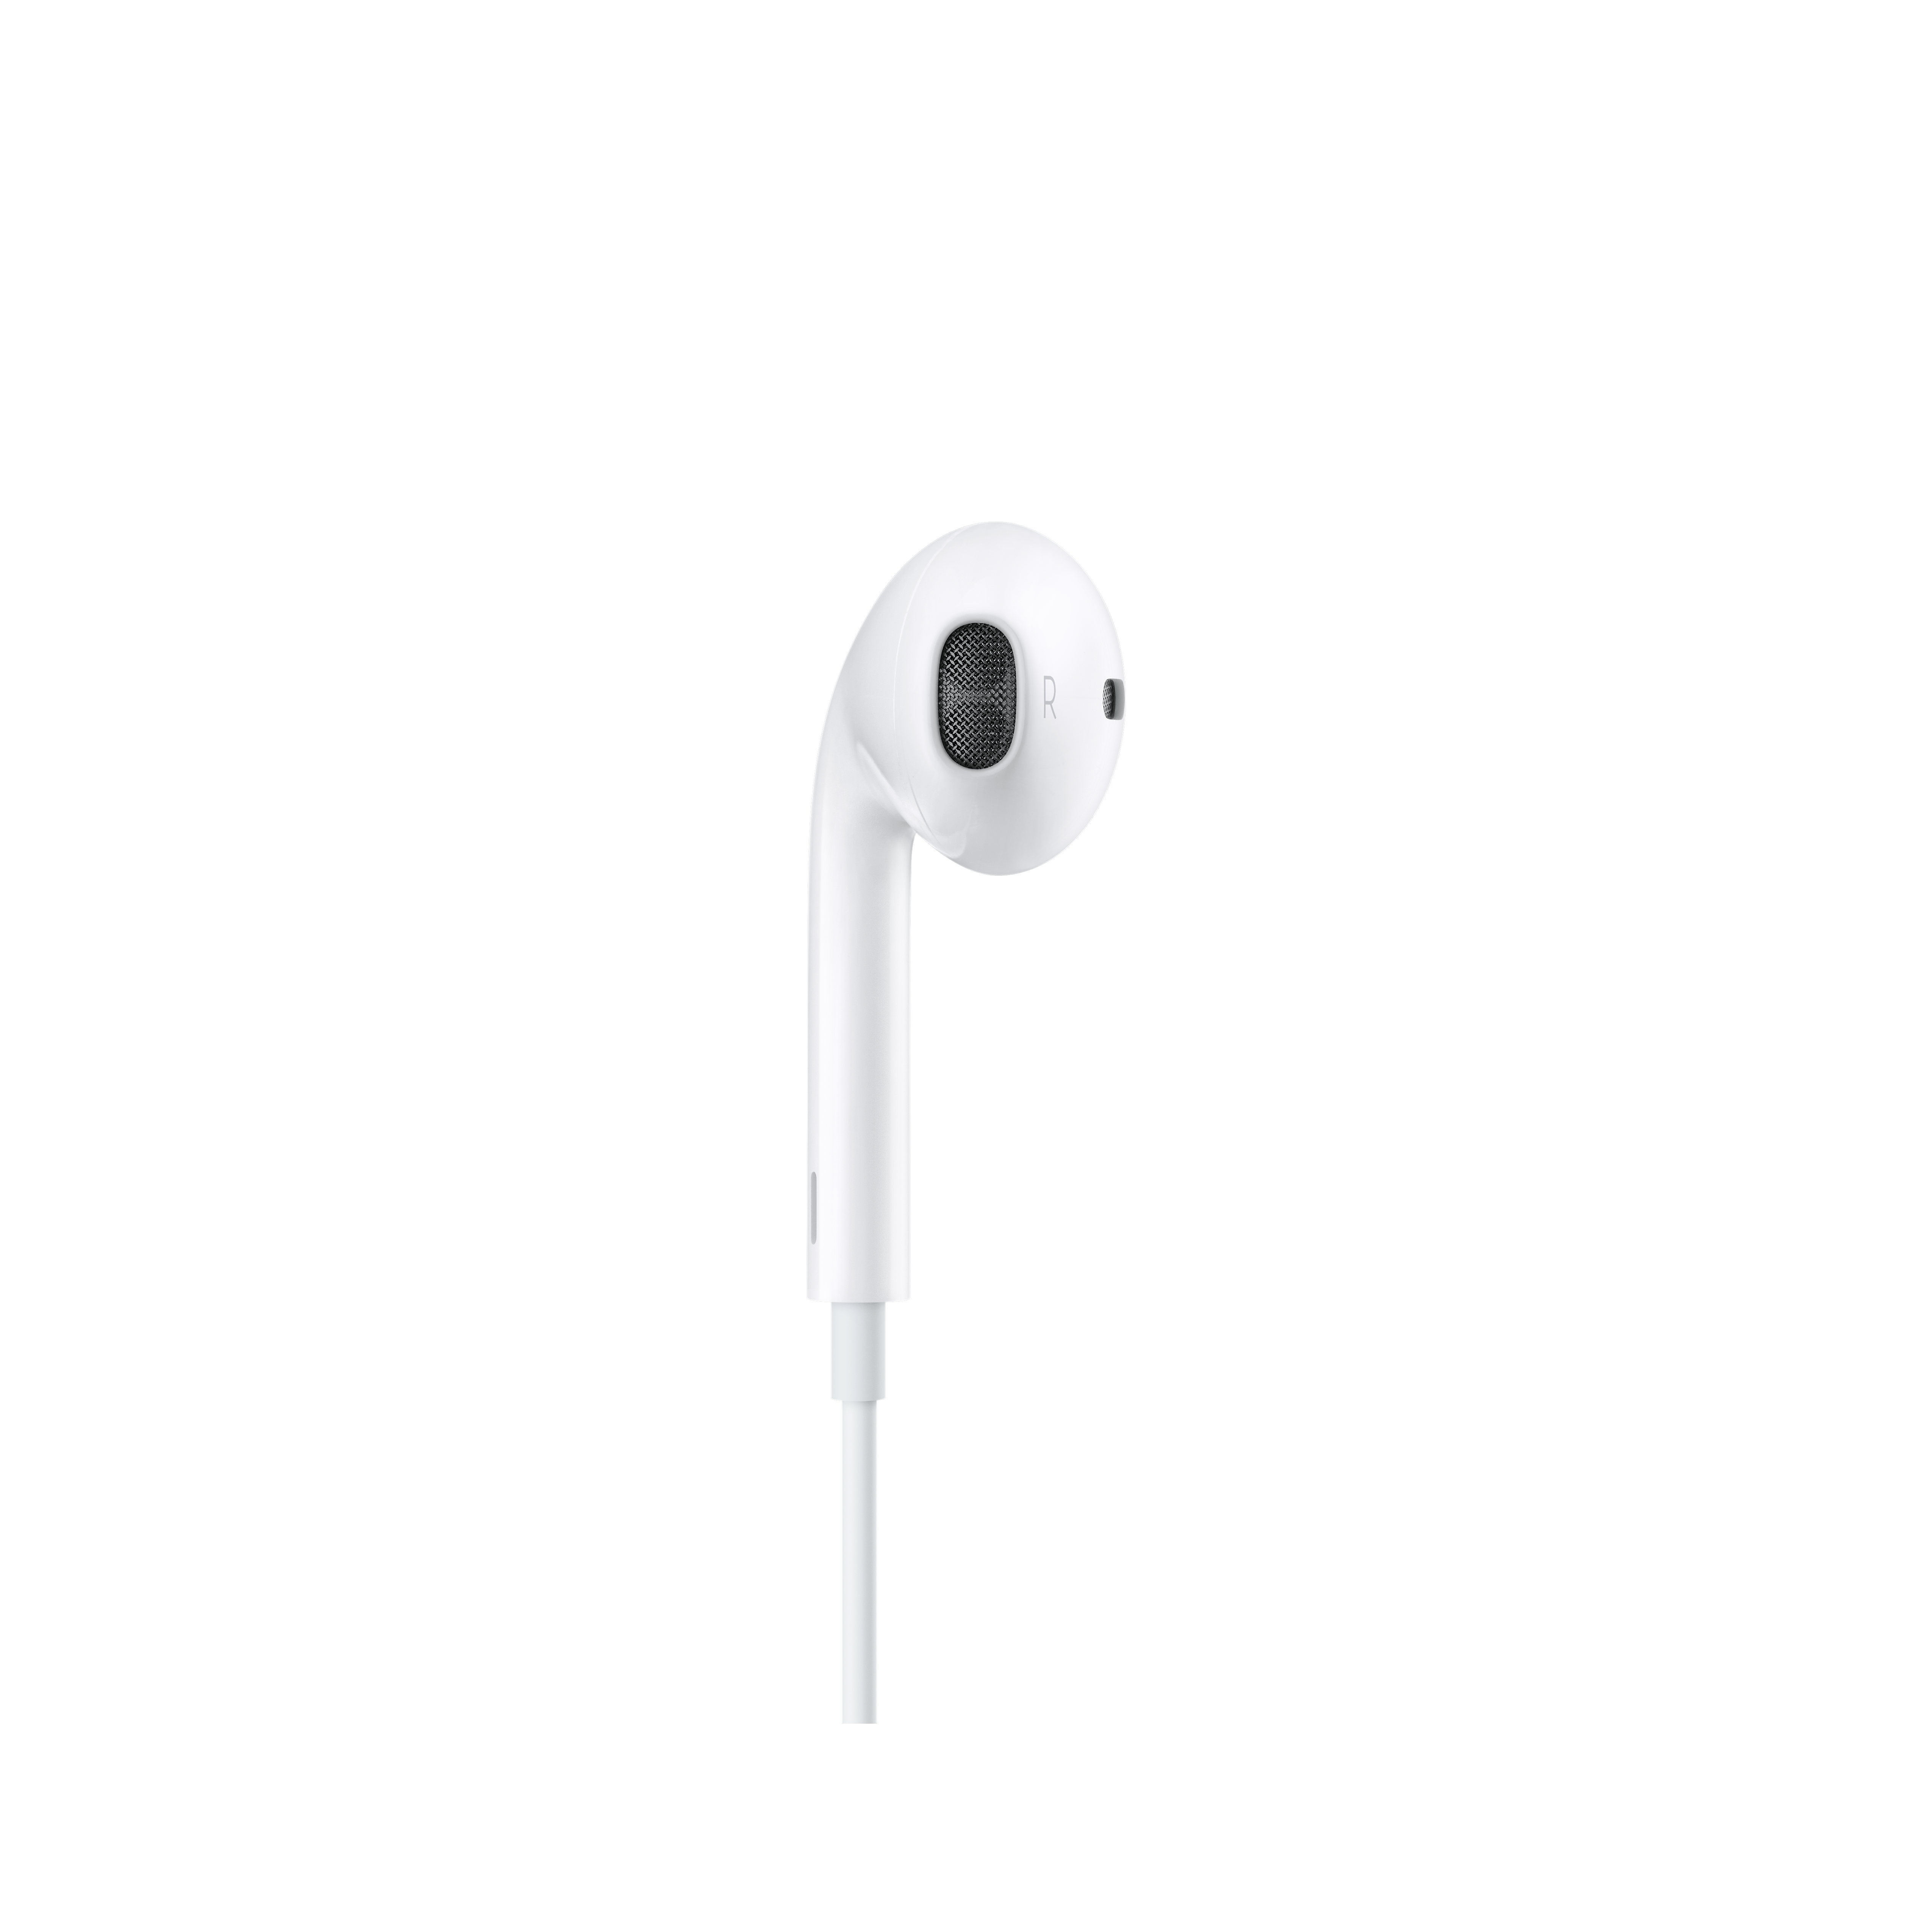  - Audífonos Apple Earpods con conector de 3.5 mm 1